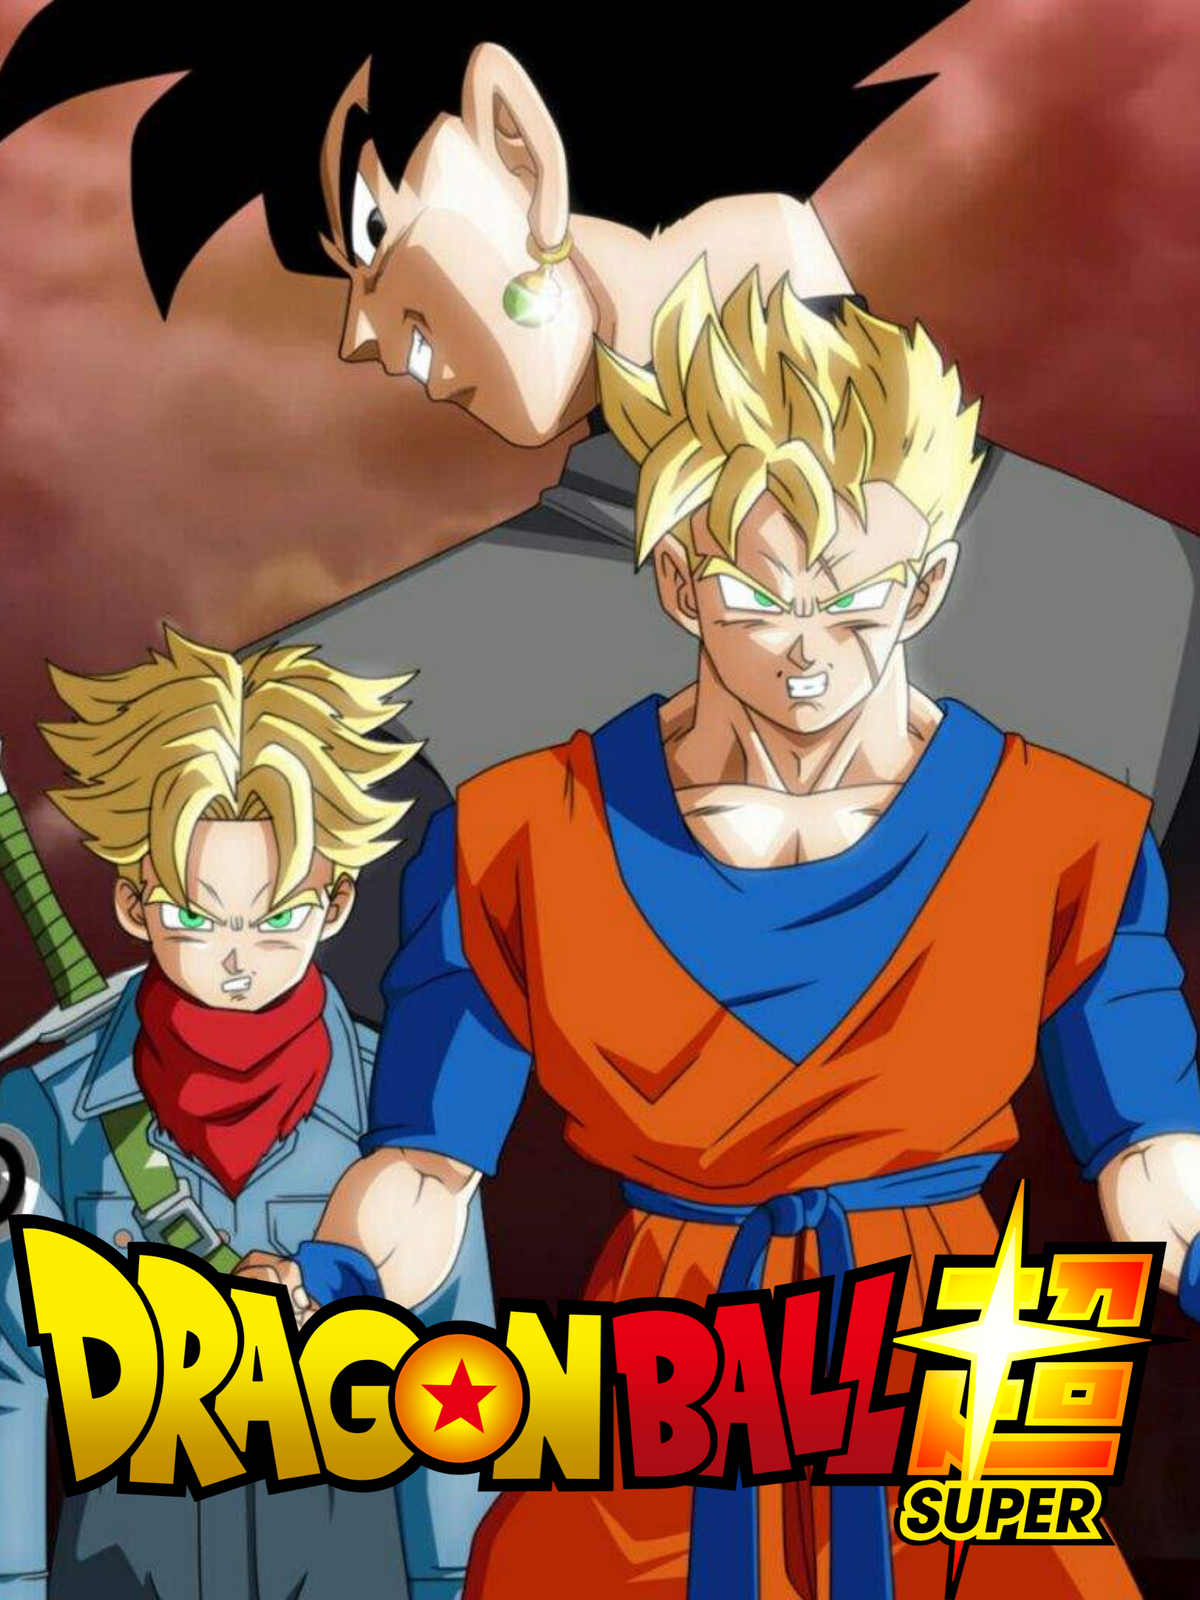 Dragon Ball Wraps Goku Black's Super Saiyan 3 Storyline